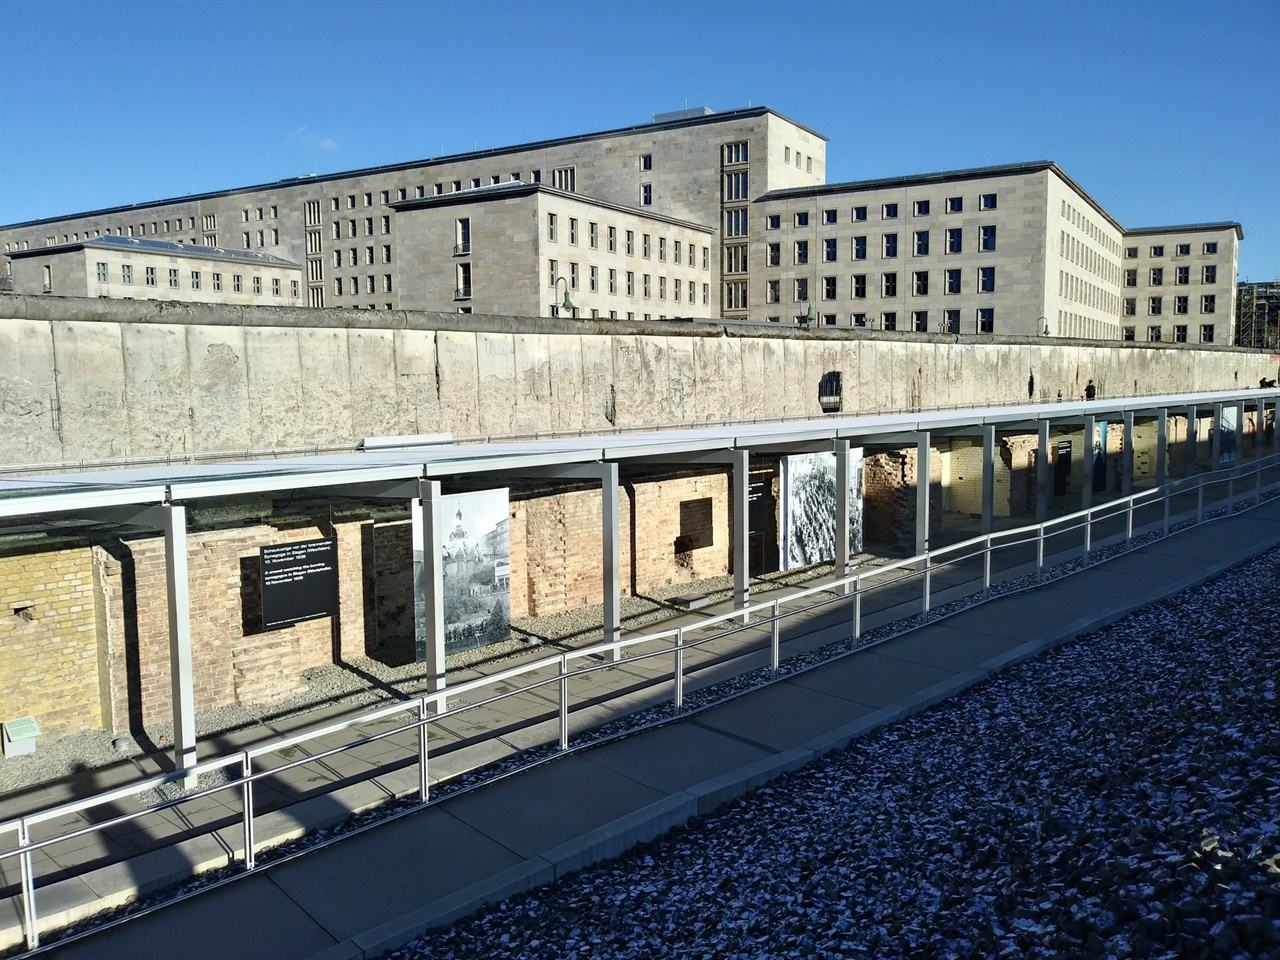 토포그라피 데스 테러 입구의 외부 전시 공간 외부 전시 공간과 나란히 옛 베를린 장벽이 을씨년스럽게 남아있다. 아무런 보수도 없이, 철골이 드러난 채 앙상하기만 하다.